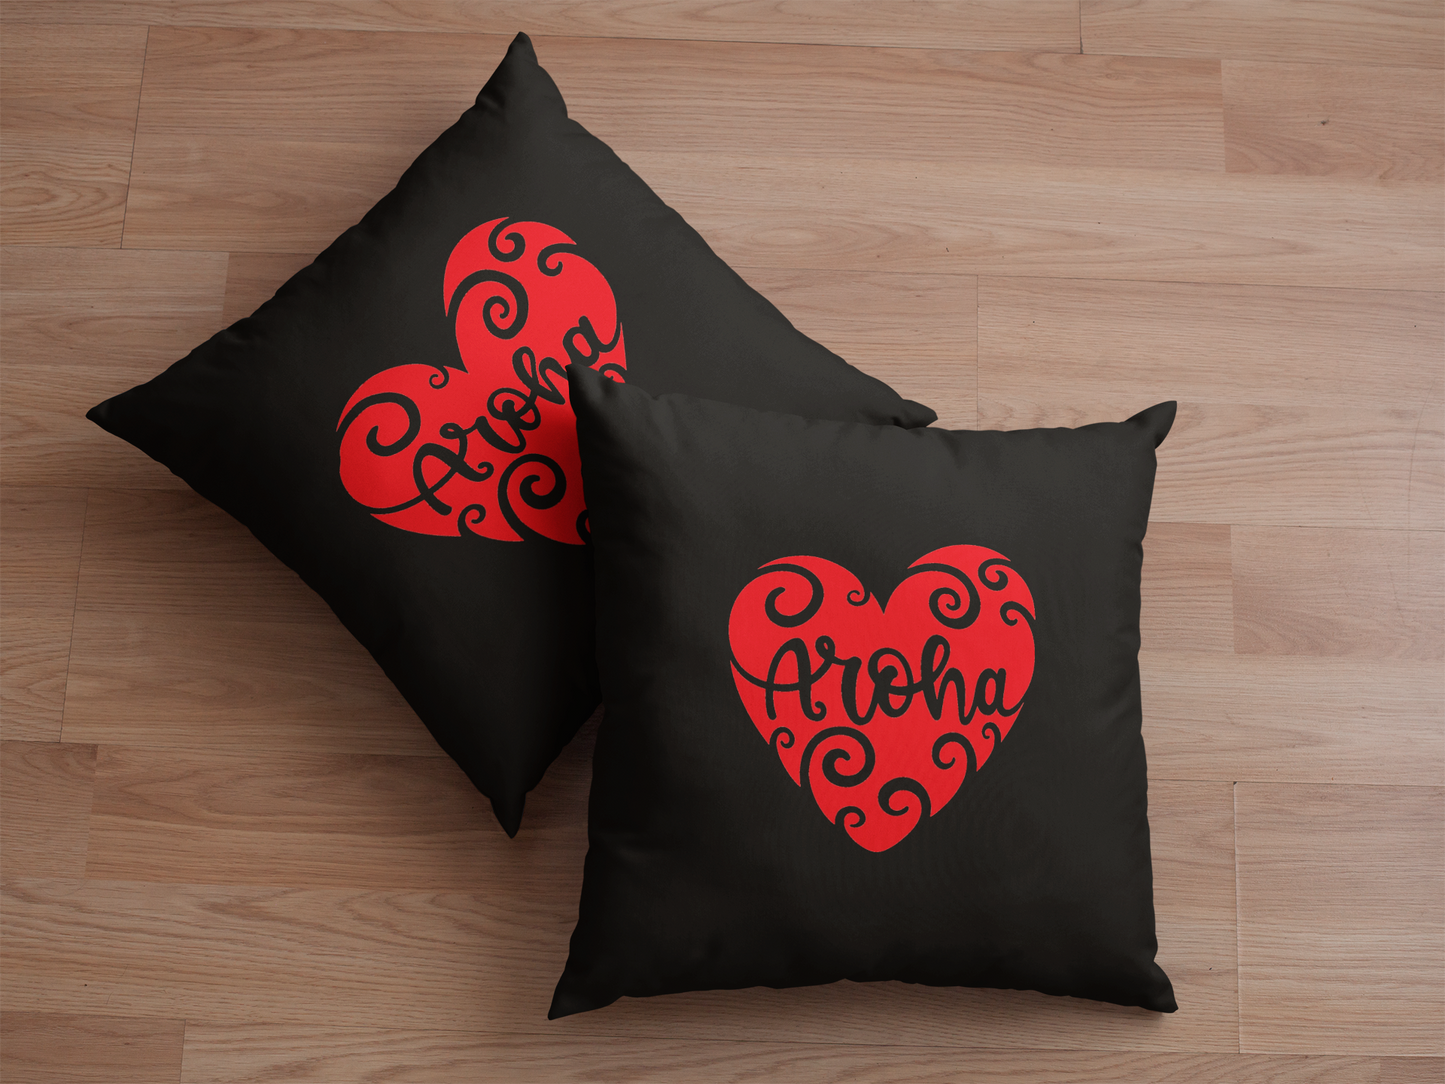 Cushion Cover - Aroha Whero Heart